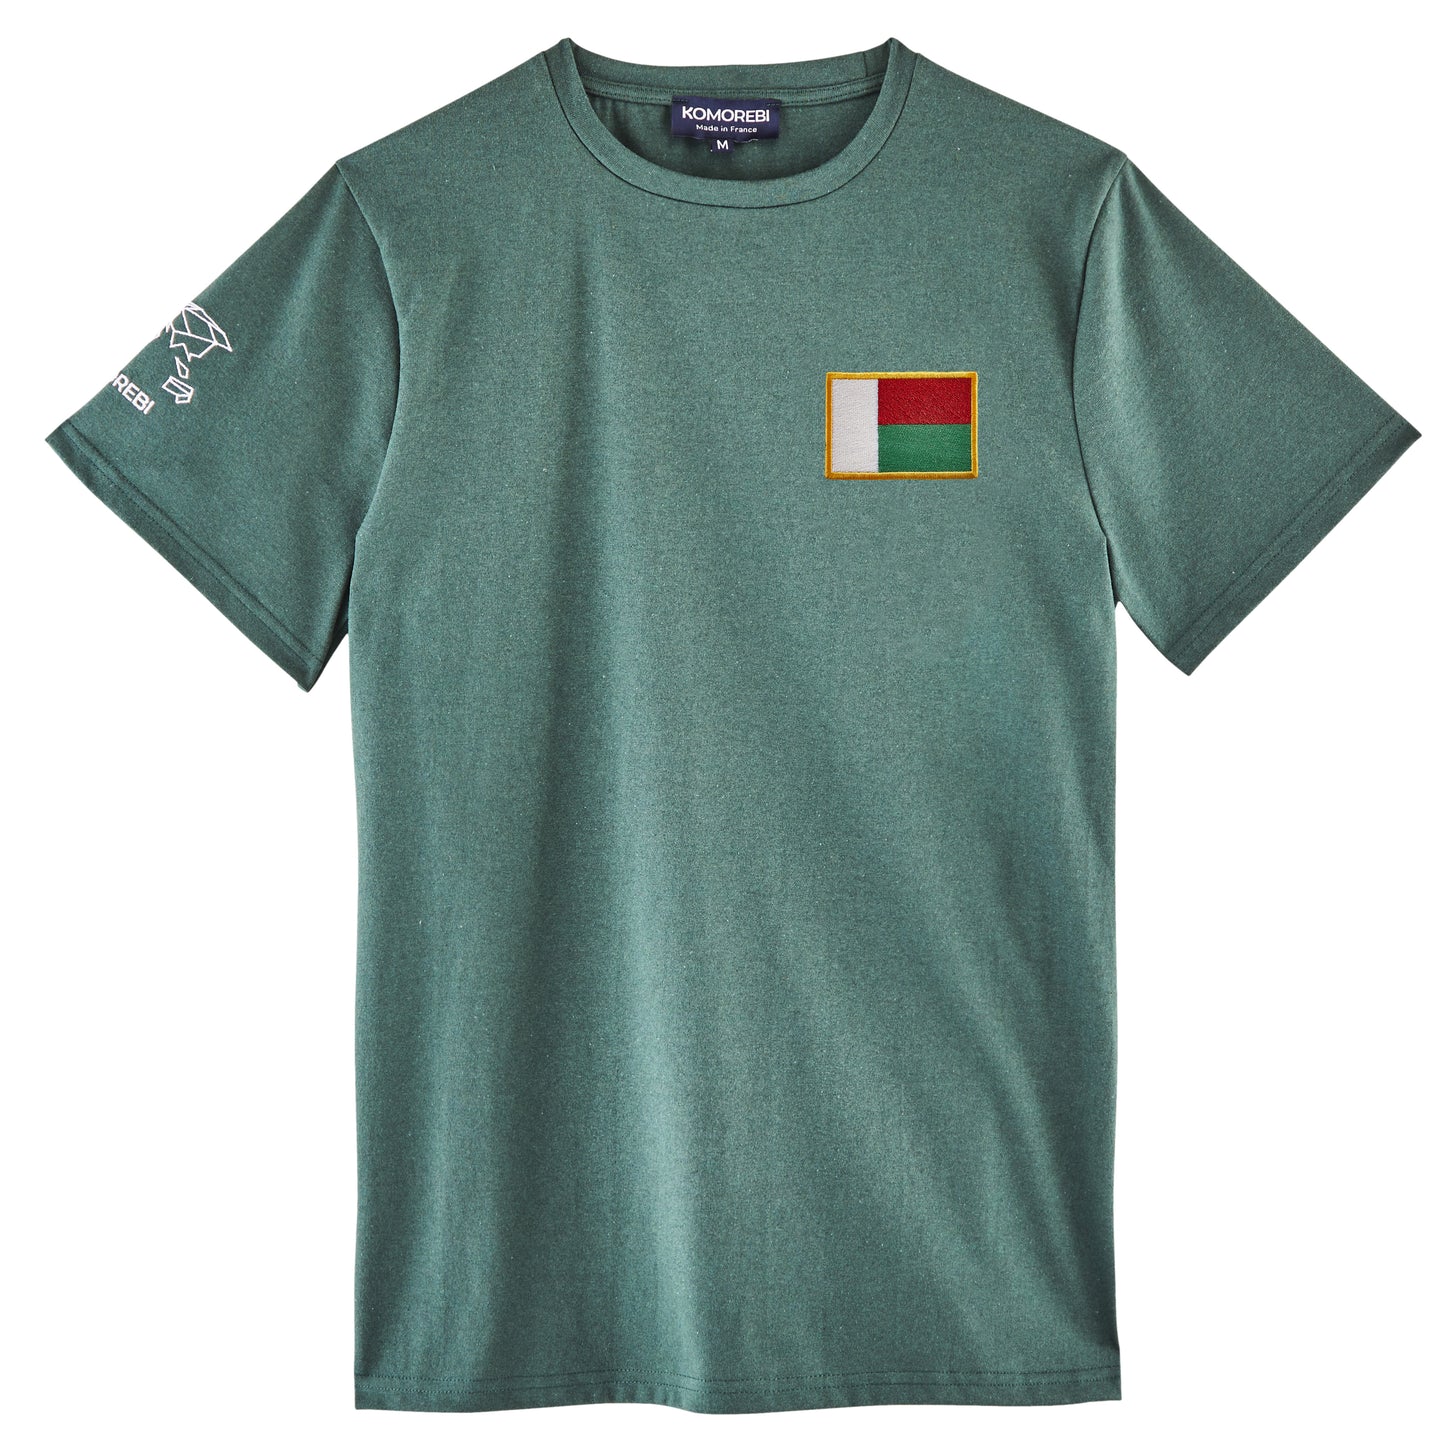 Madagascar • T-shirt